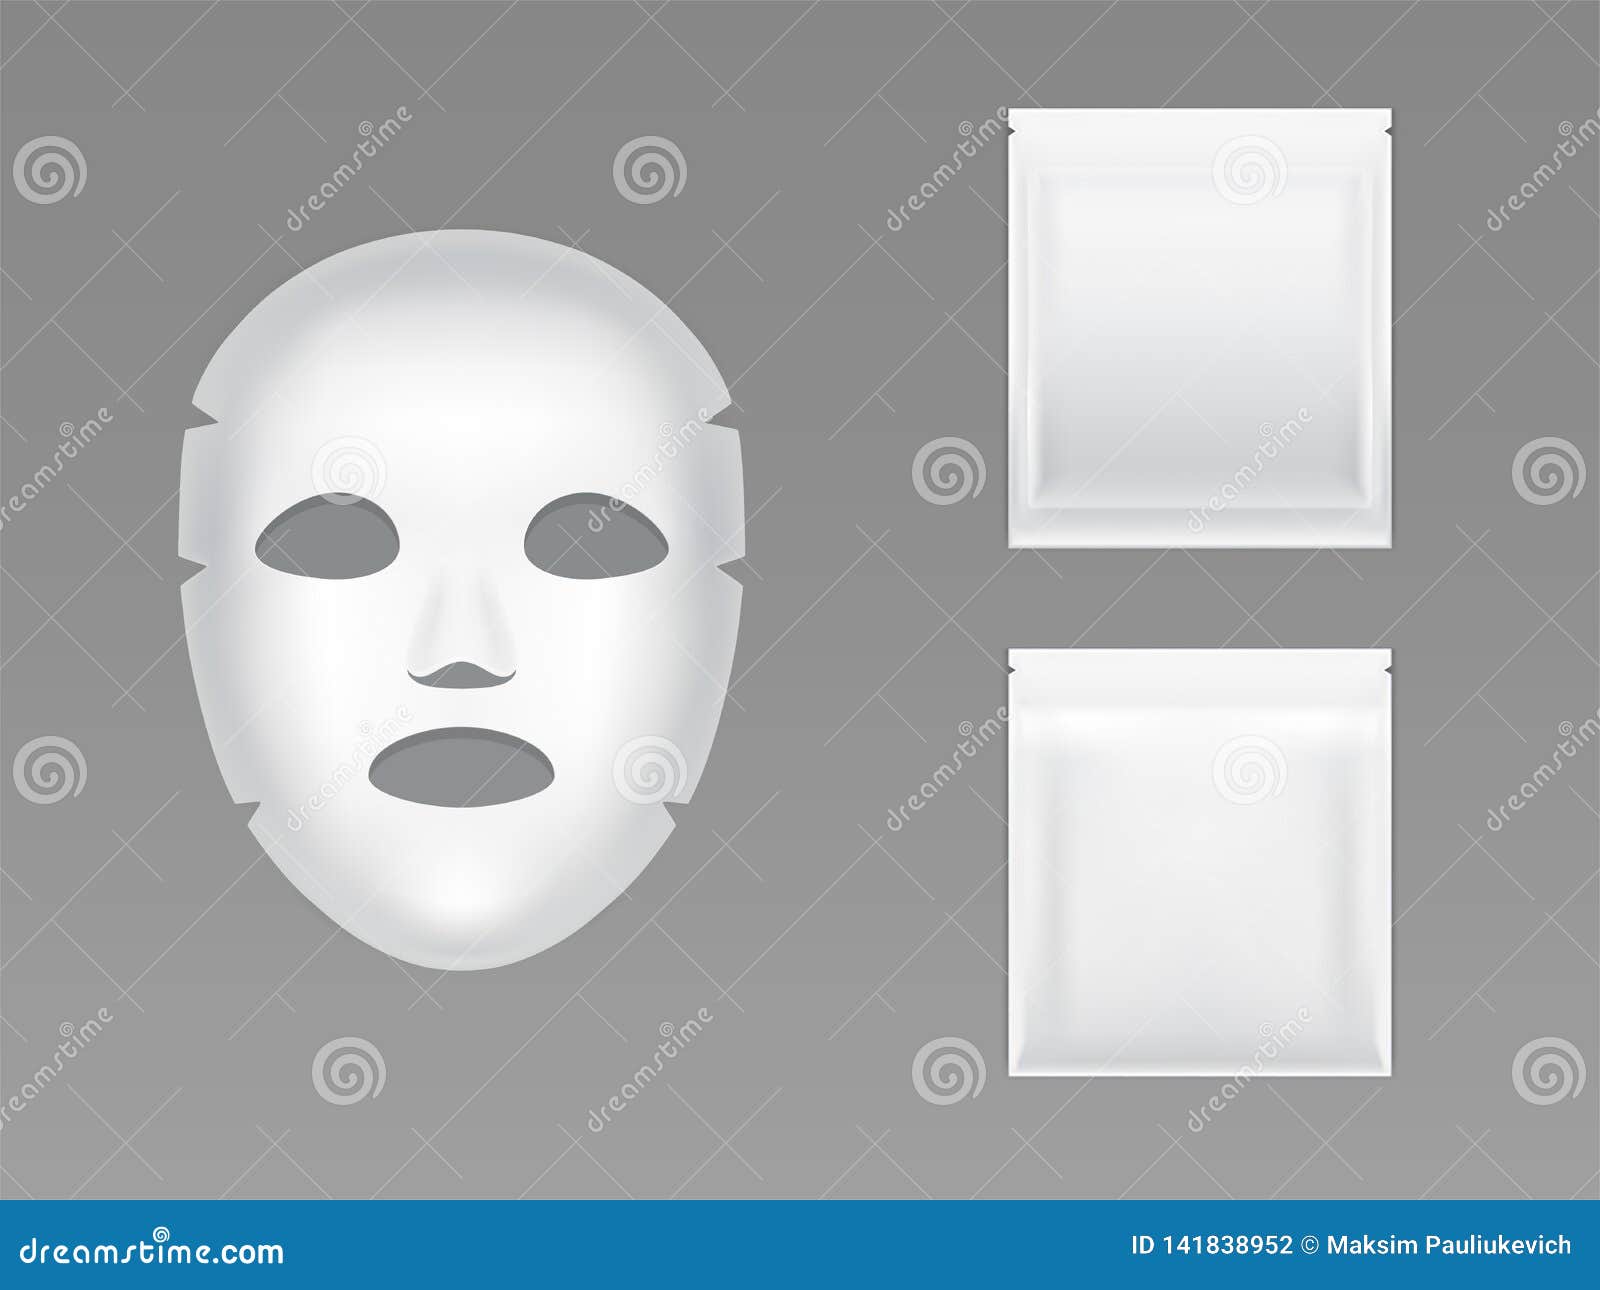 Косметика распечатать маски. Маски для лица упаковка. Бумажнее маски для лица. Маски для лица упаковка бумажная. Макет упаковки маски для лица.